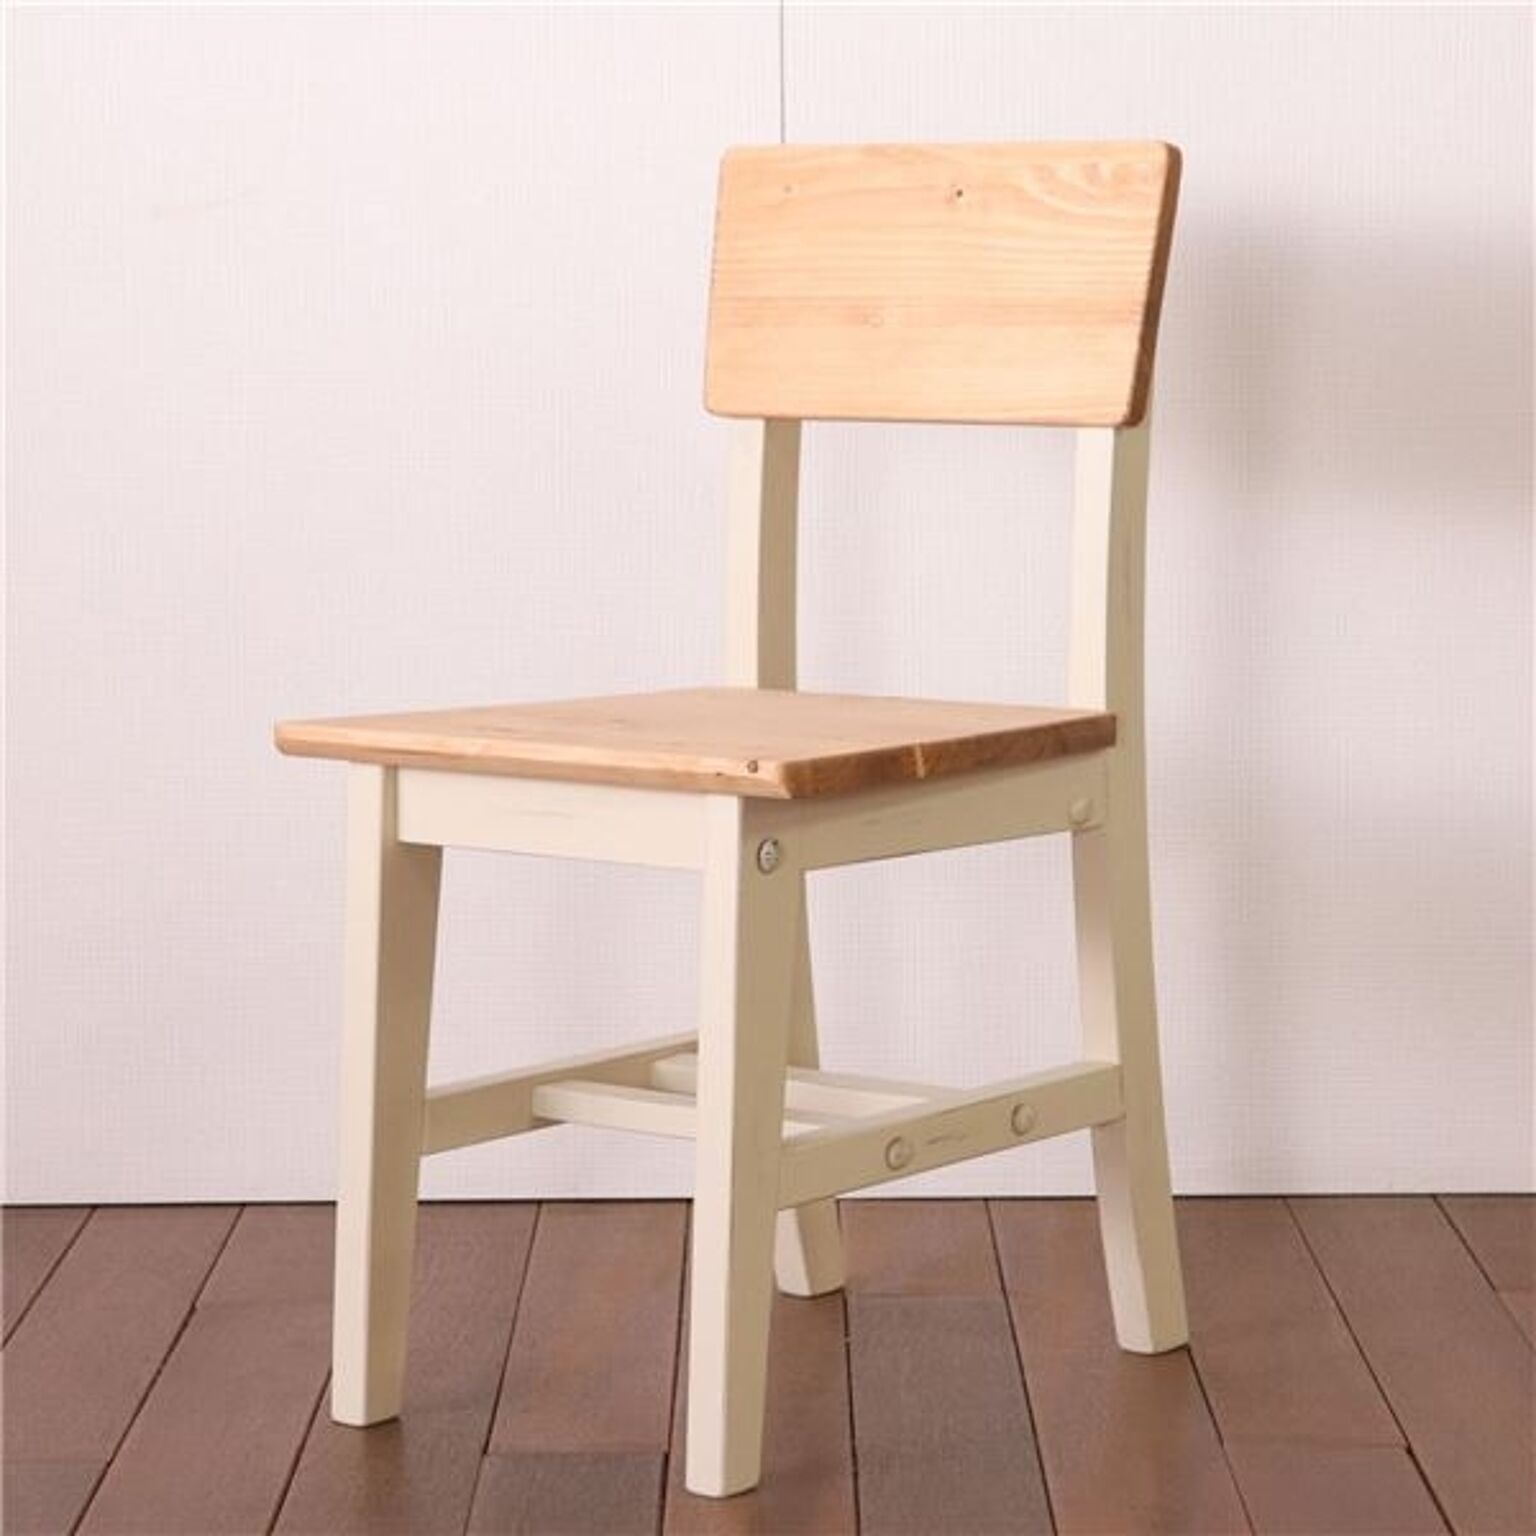 北欧風 ダイニングチェア/食卓椅子 【ホワイト】 40×48×77(43)cm 木製 パイン材 〔リビング ダイニング〕